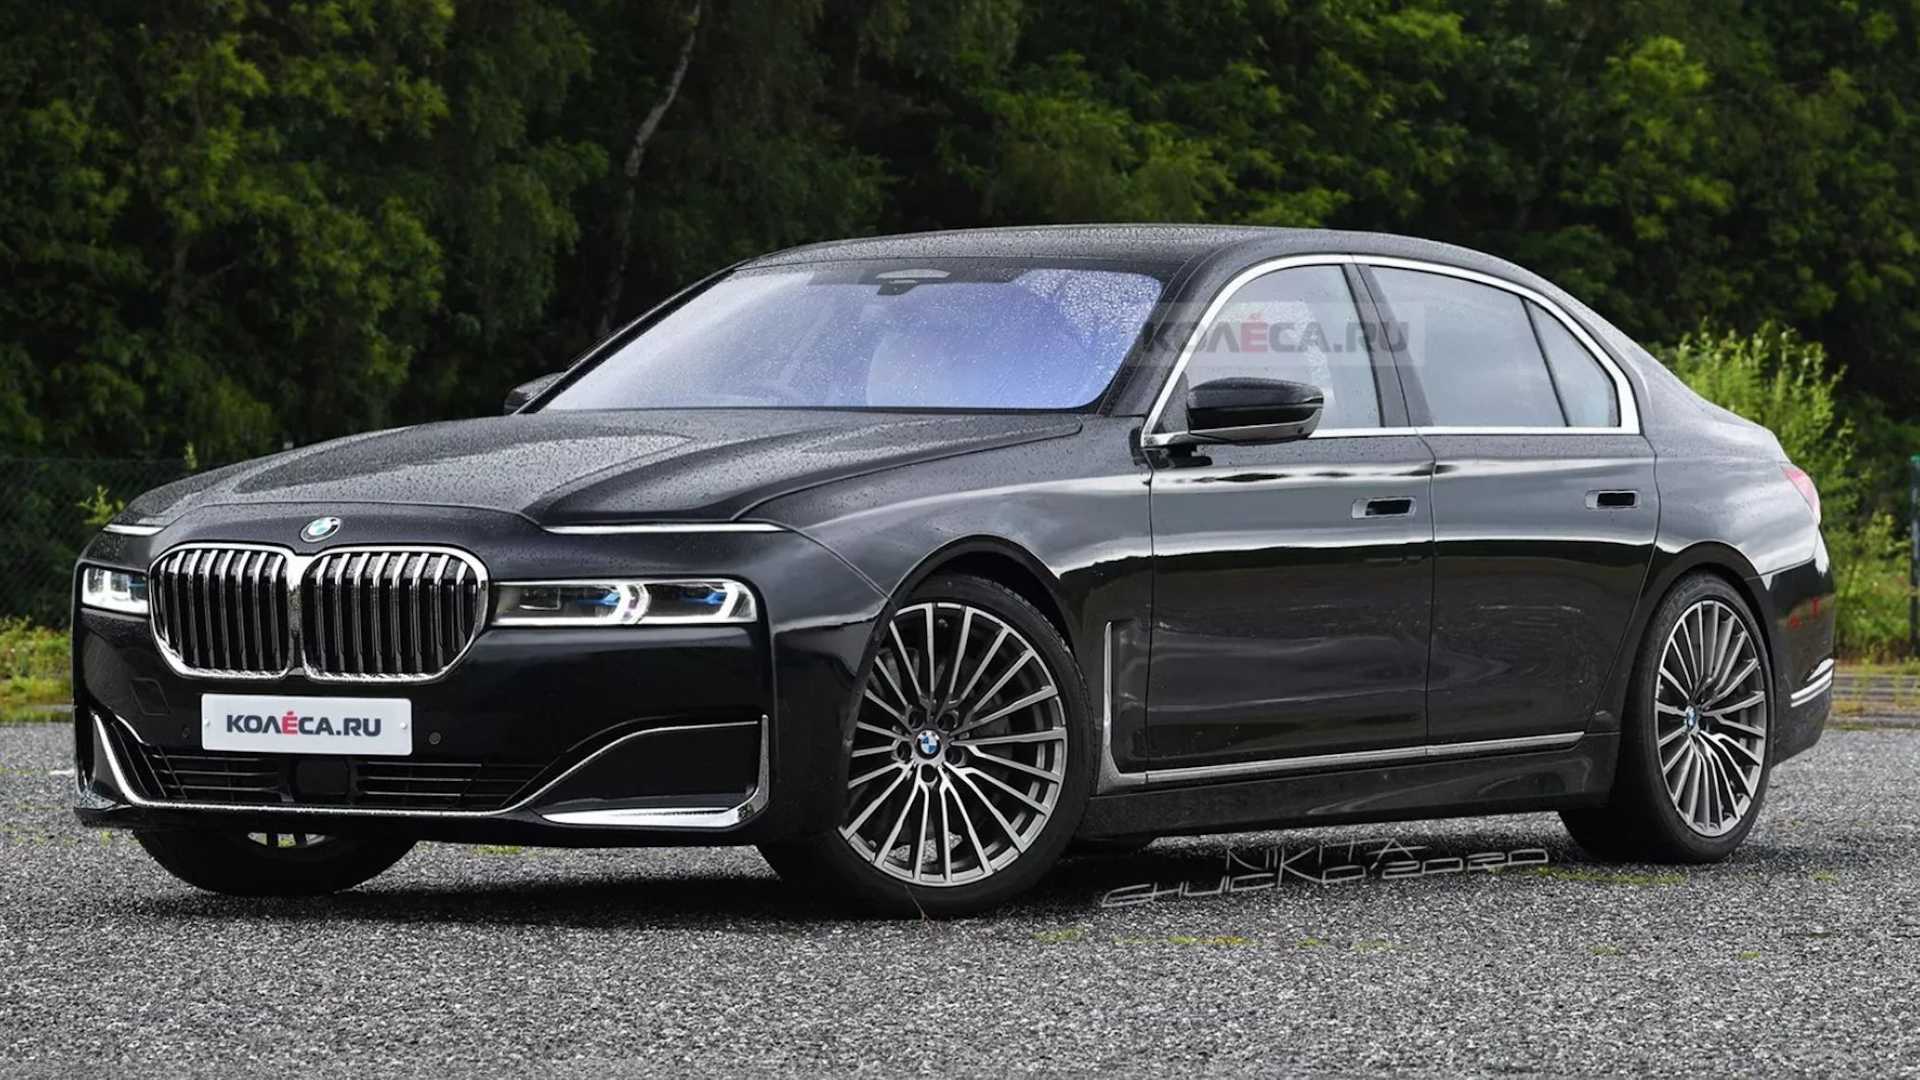 Θα είναι έτσι η επόμενη BMW 7 Series;